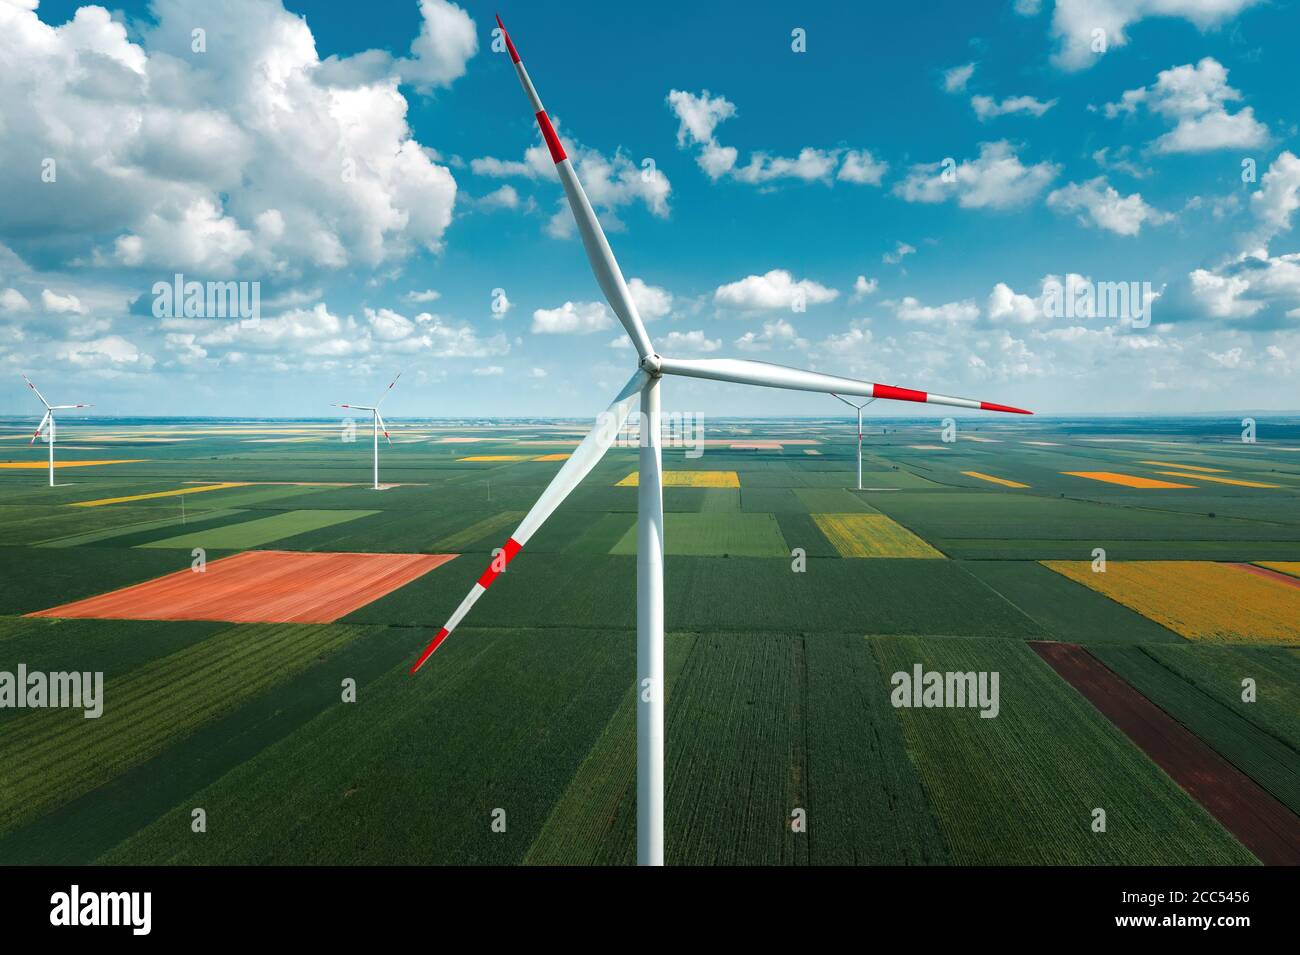 Vista aérea de los aerogeneradores en el parque eólico moderno desde la pov de los aviones, visión de gran angular de la innovadora tecnología de recursos sostenibles Foto de stock